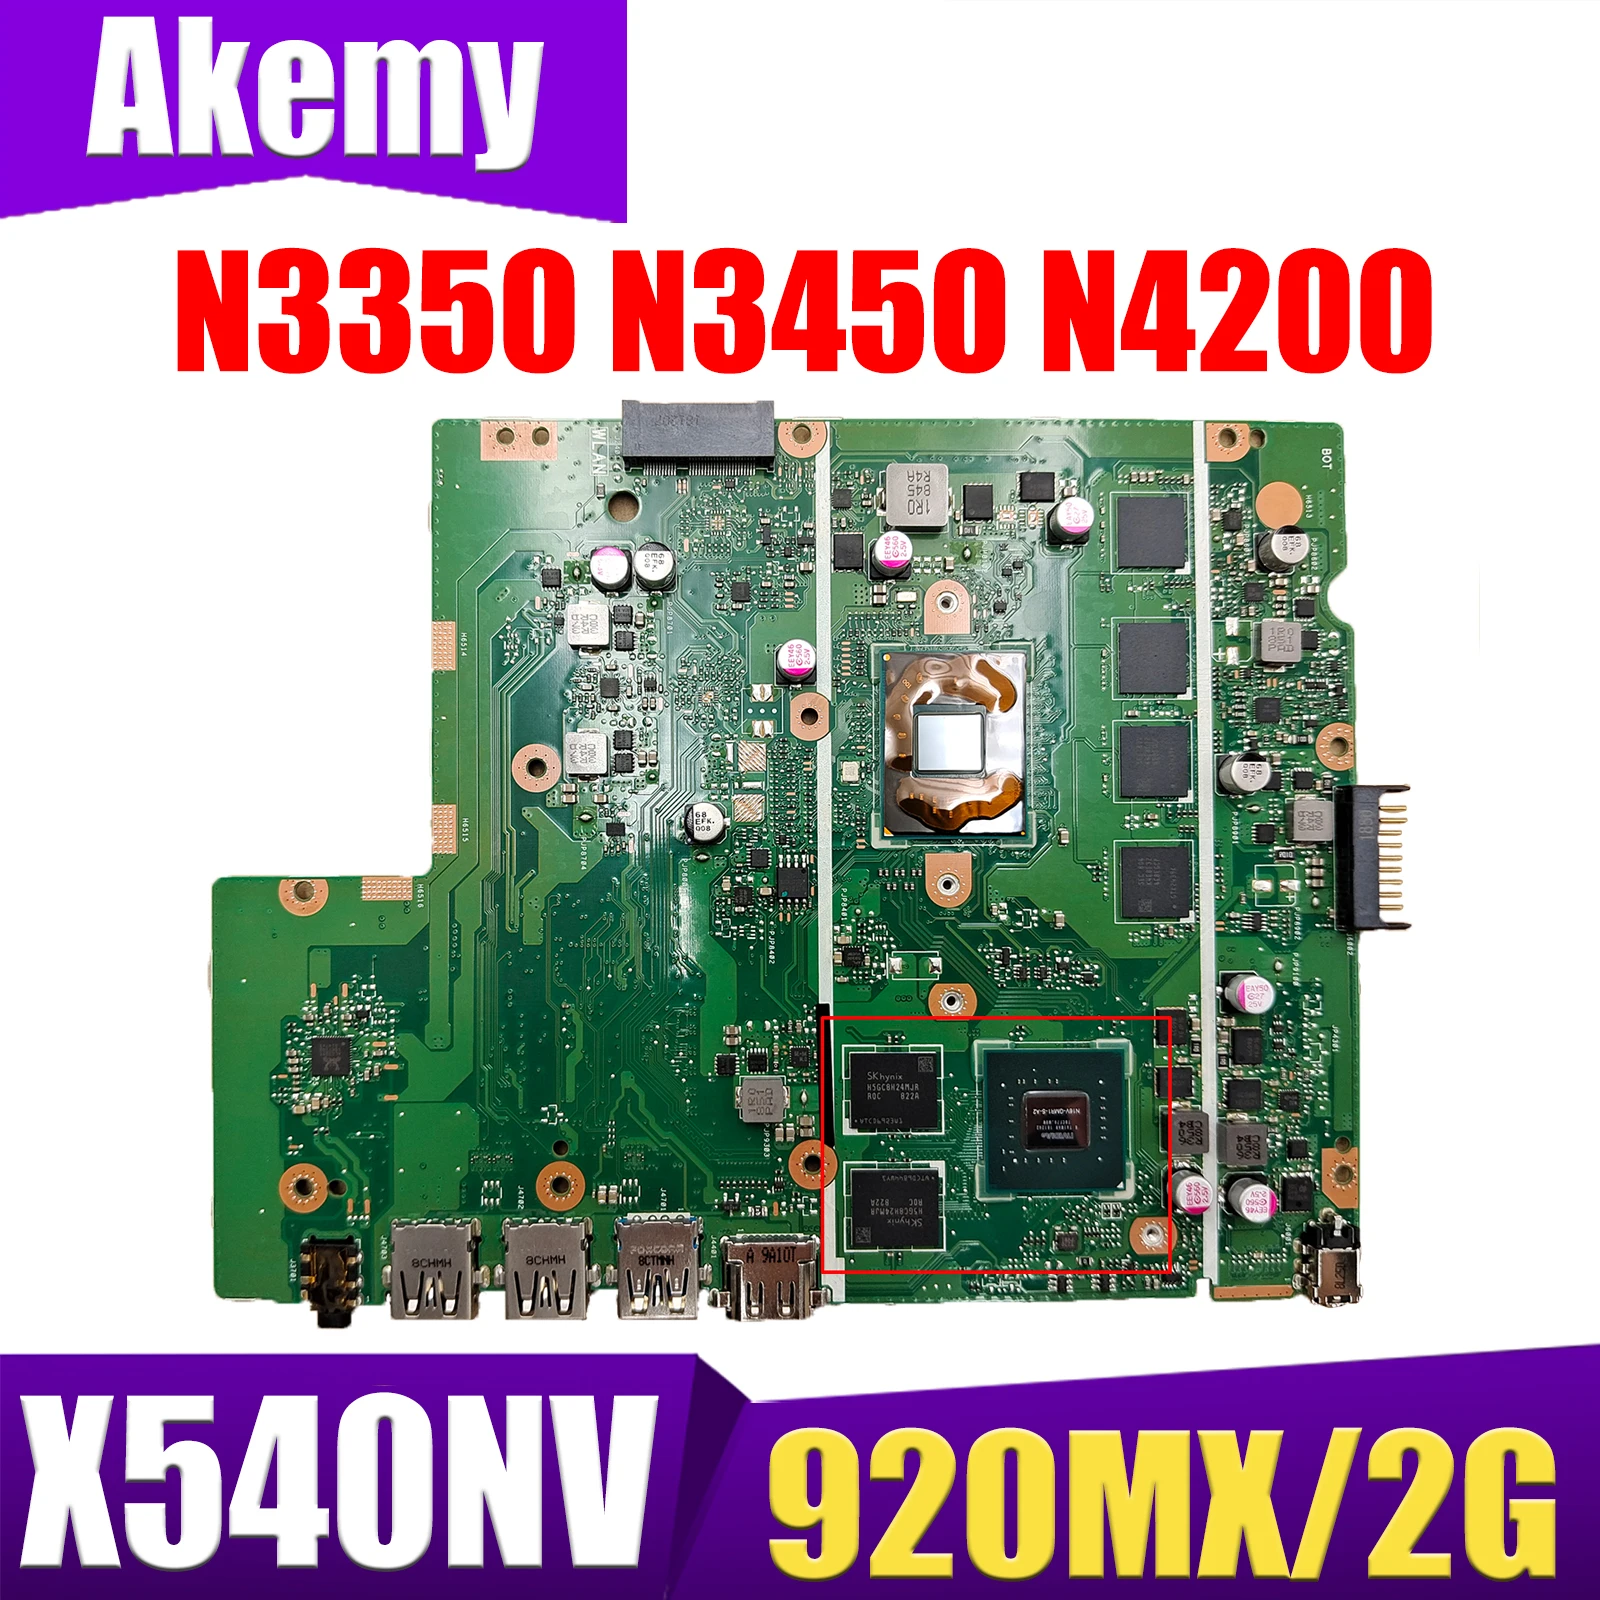 

Материнская плата X540NV X540N D540NV F540NV A540NV R540NV X580NV материнская плата для ноутбука N3350/N3450 N4200 920MX/V2G RAM-4GB